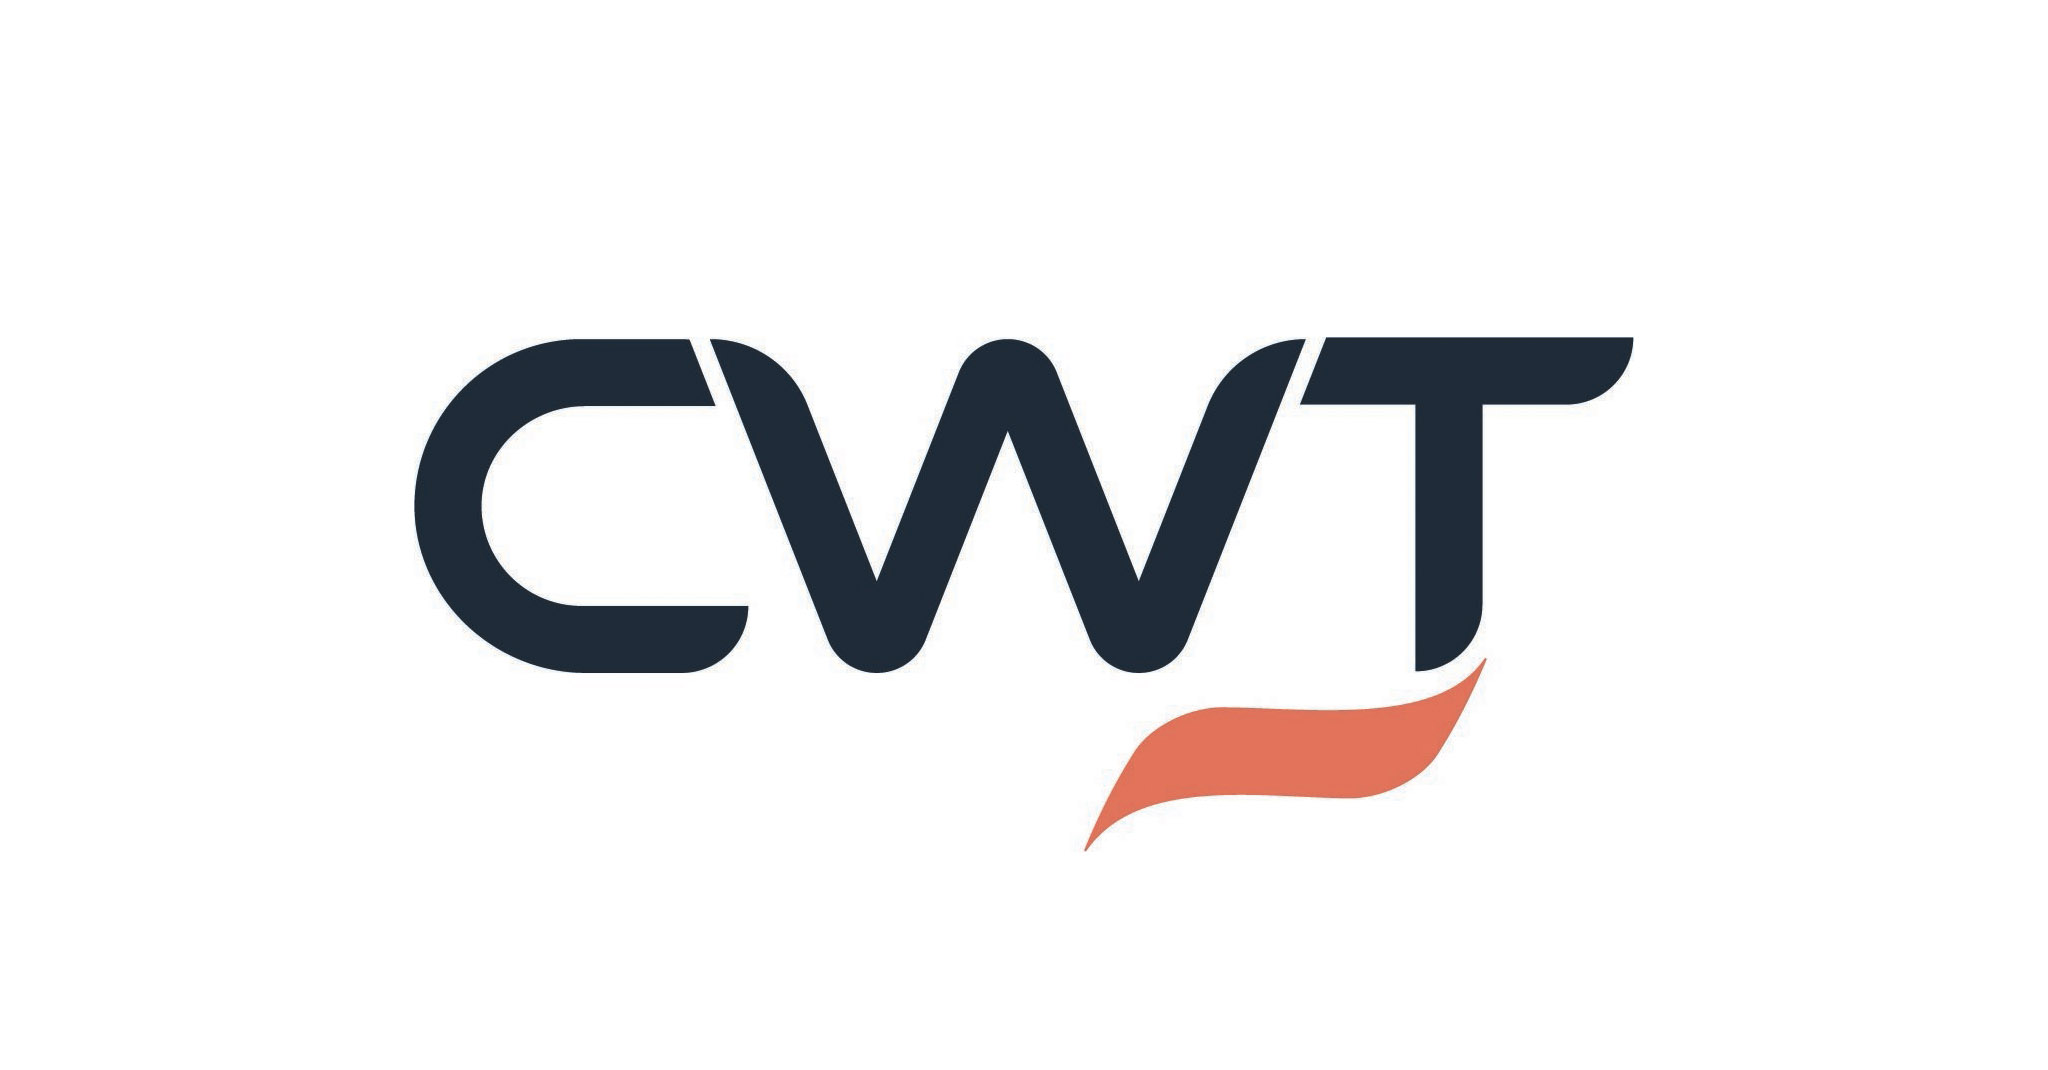 CWT déploie la réservation de train ainsi que la location de voiture sur sa plateforme myCWT et fait le point sur la NDC